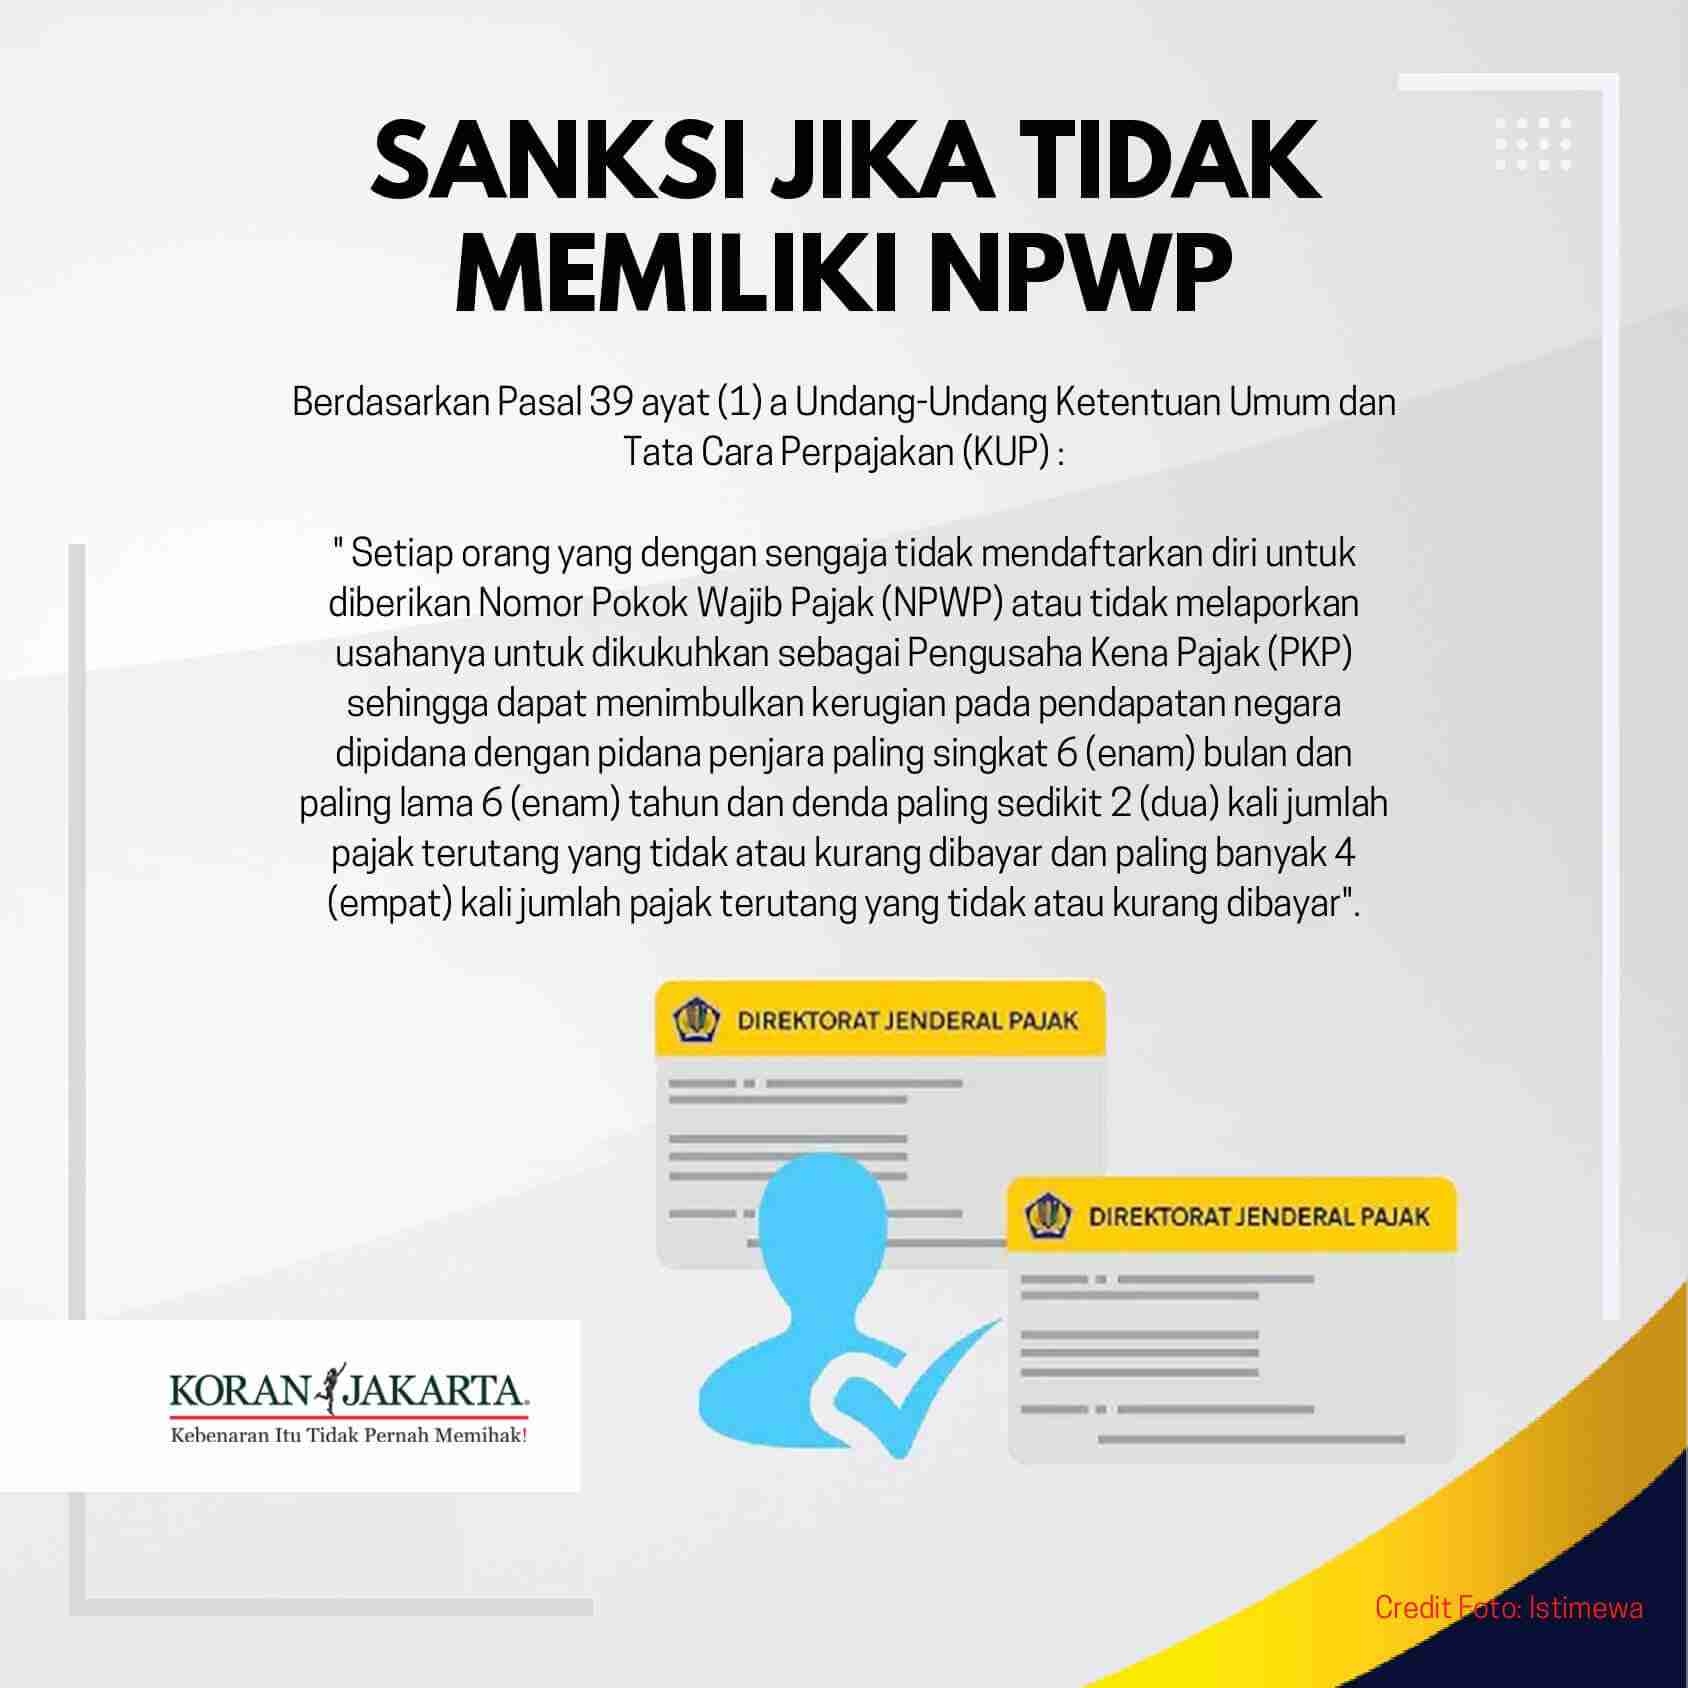 Cara Mudah Membuat NPWP Online Infografis Koran Jakarta